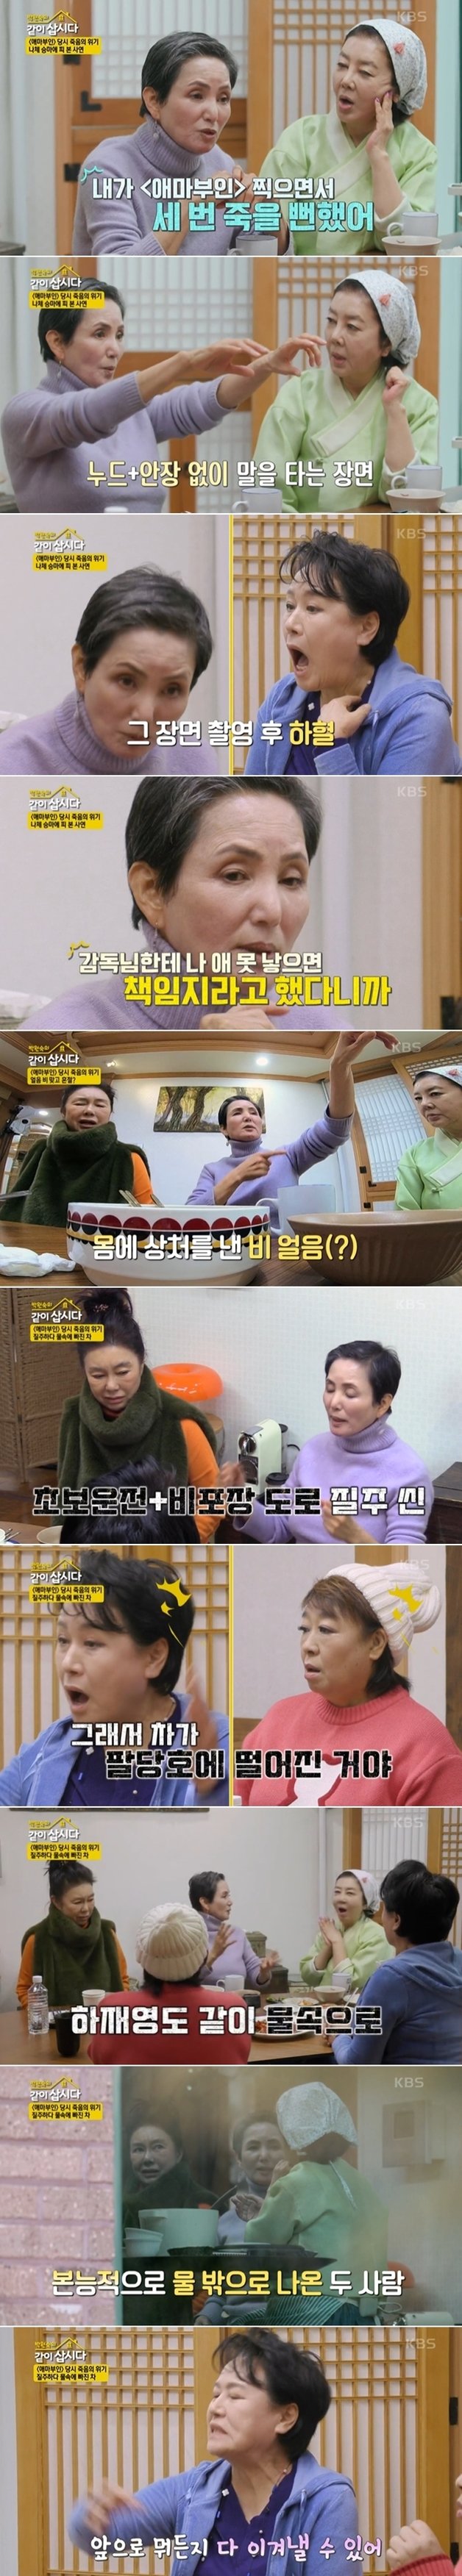 KBS2 예능프로그램 ‘박원숙의 같이 삽시다’ 방송 화면 갈무리